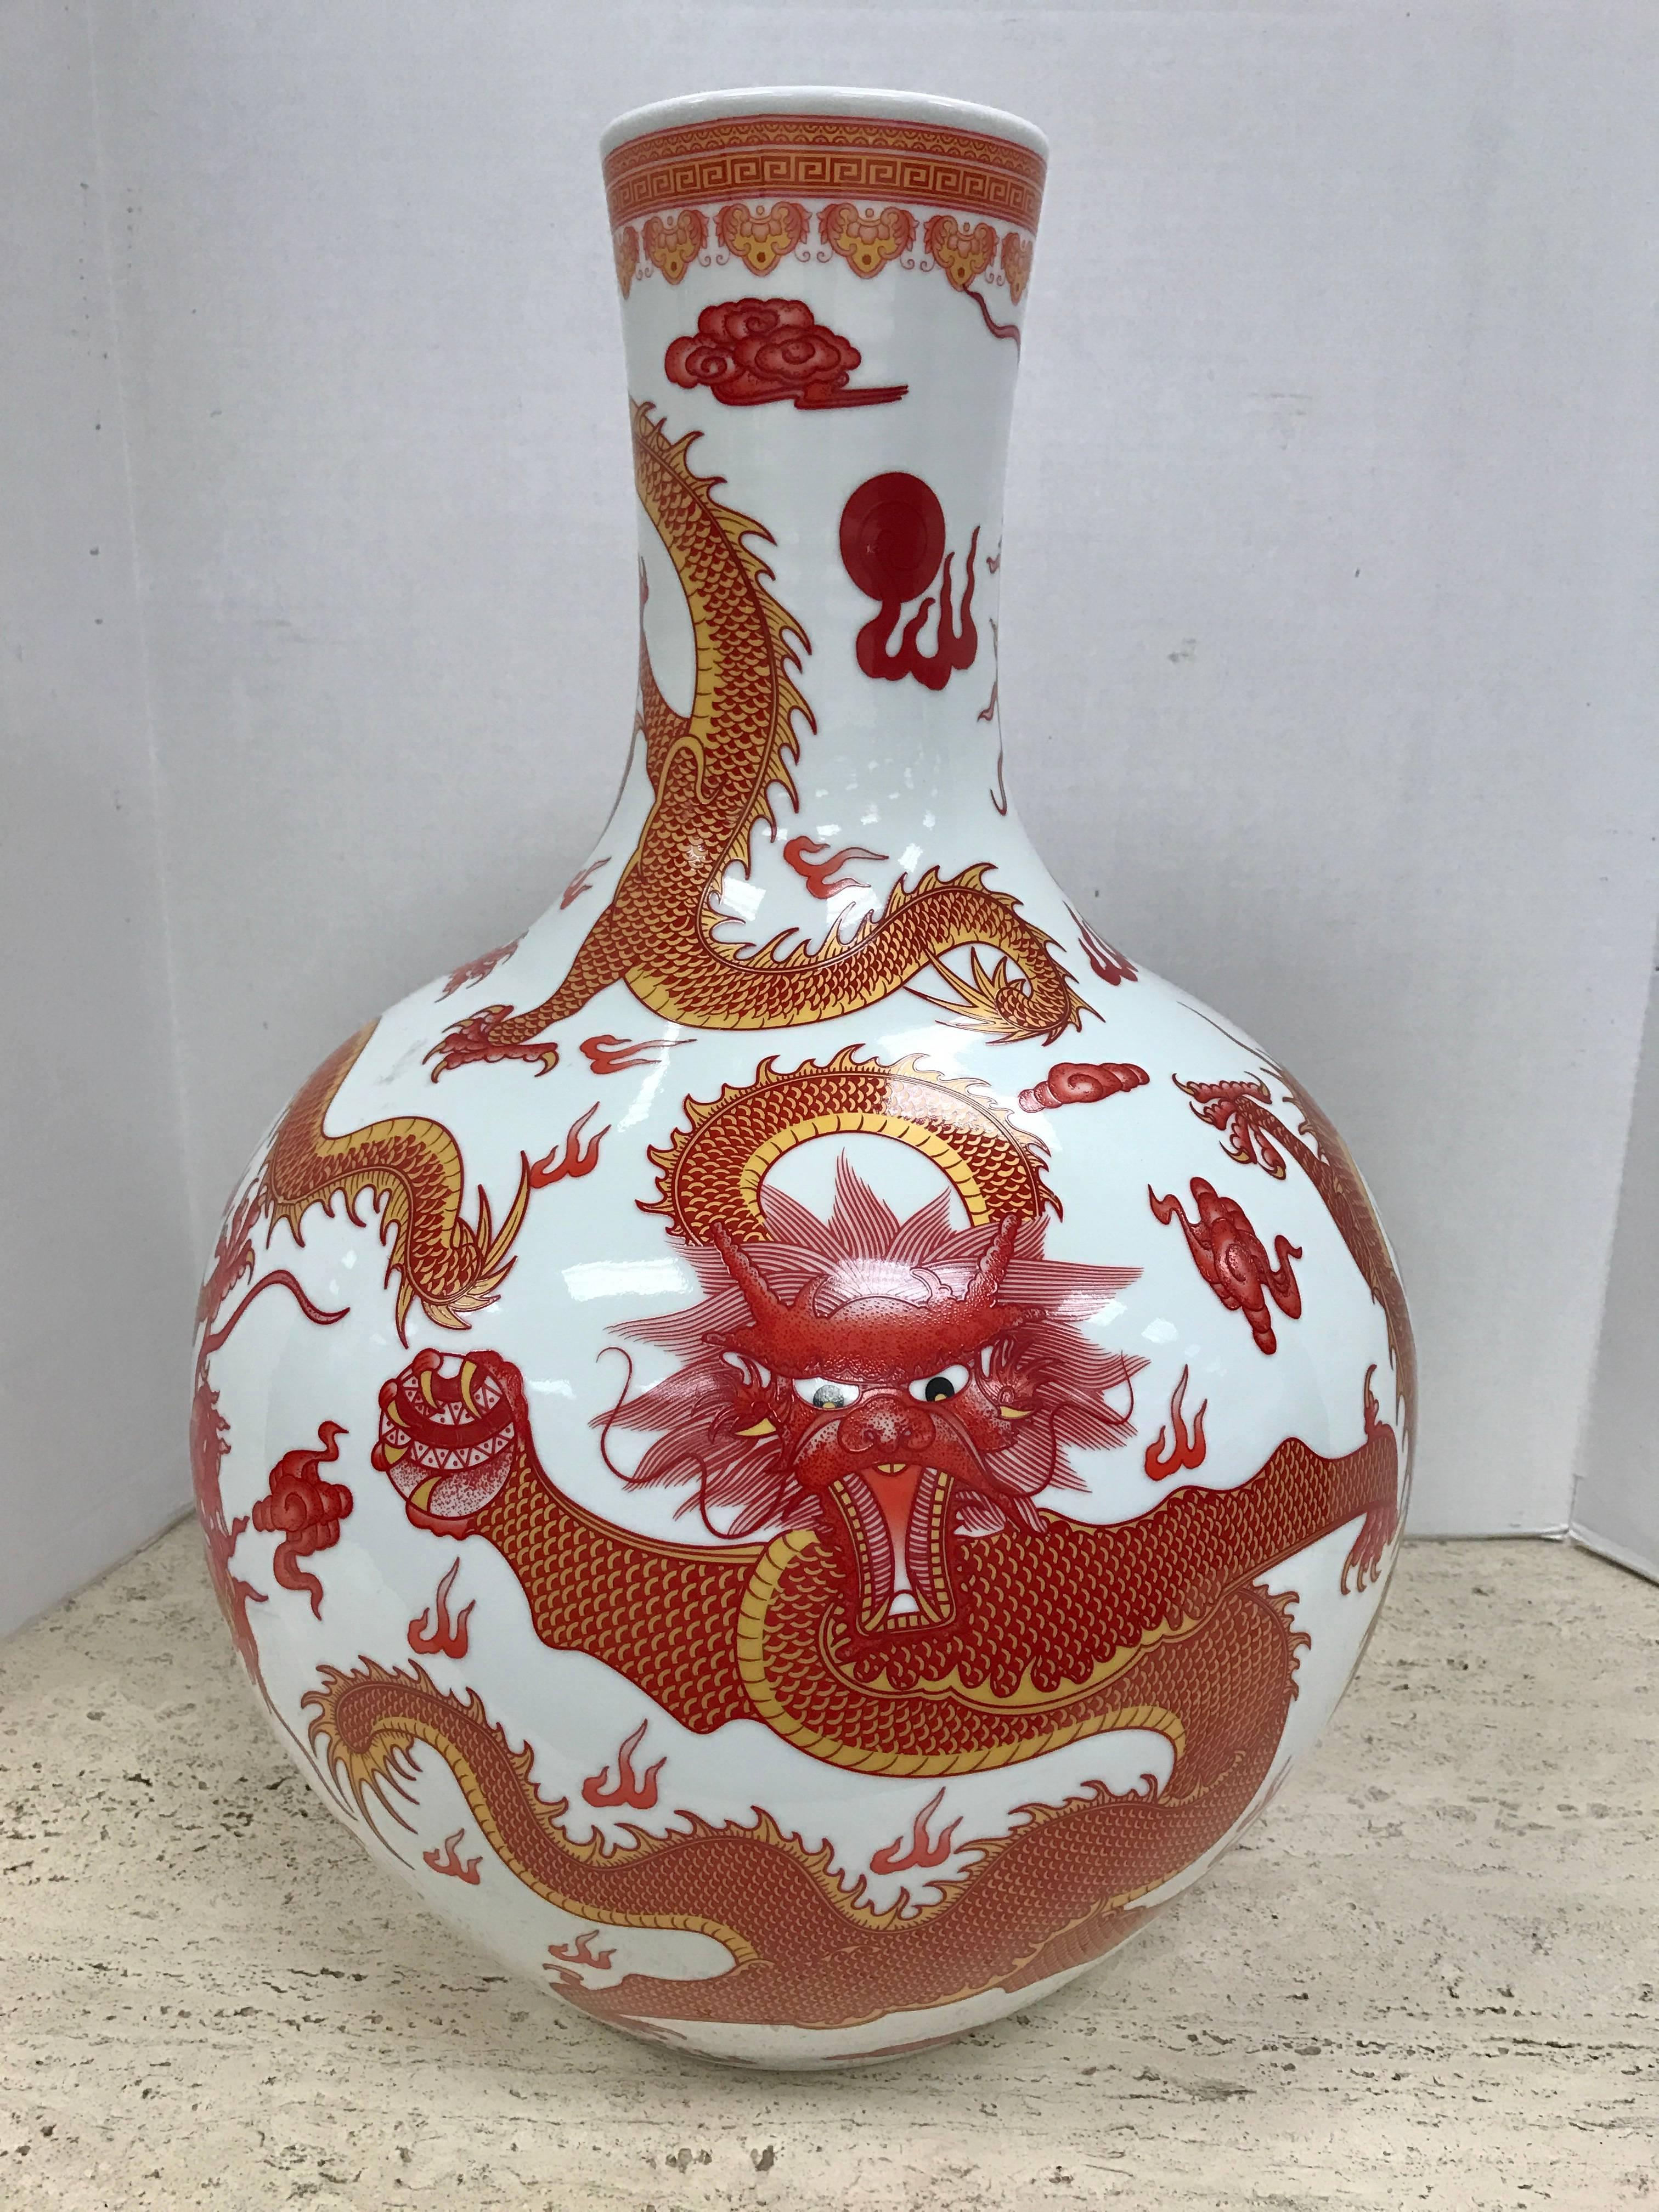 Große chinesische Vase orange und weiß gemalt schön detaillierte Drachen rundum.